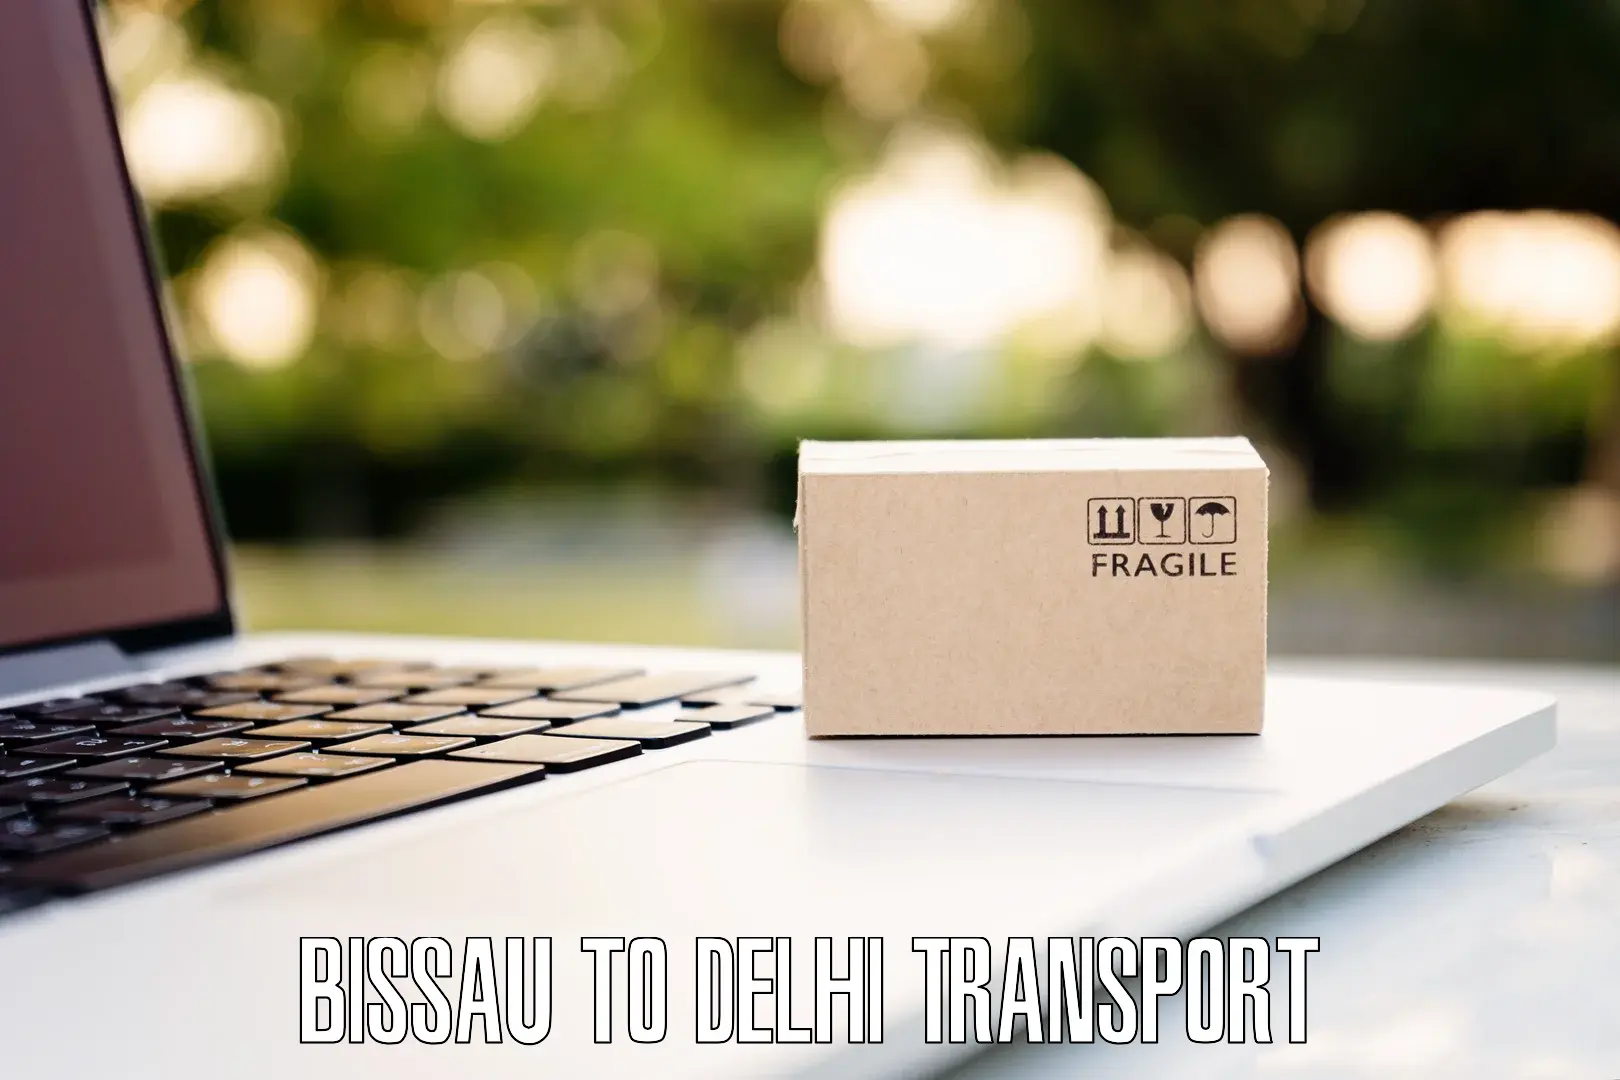 Intercity transport Bissau to NIT Delhi